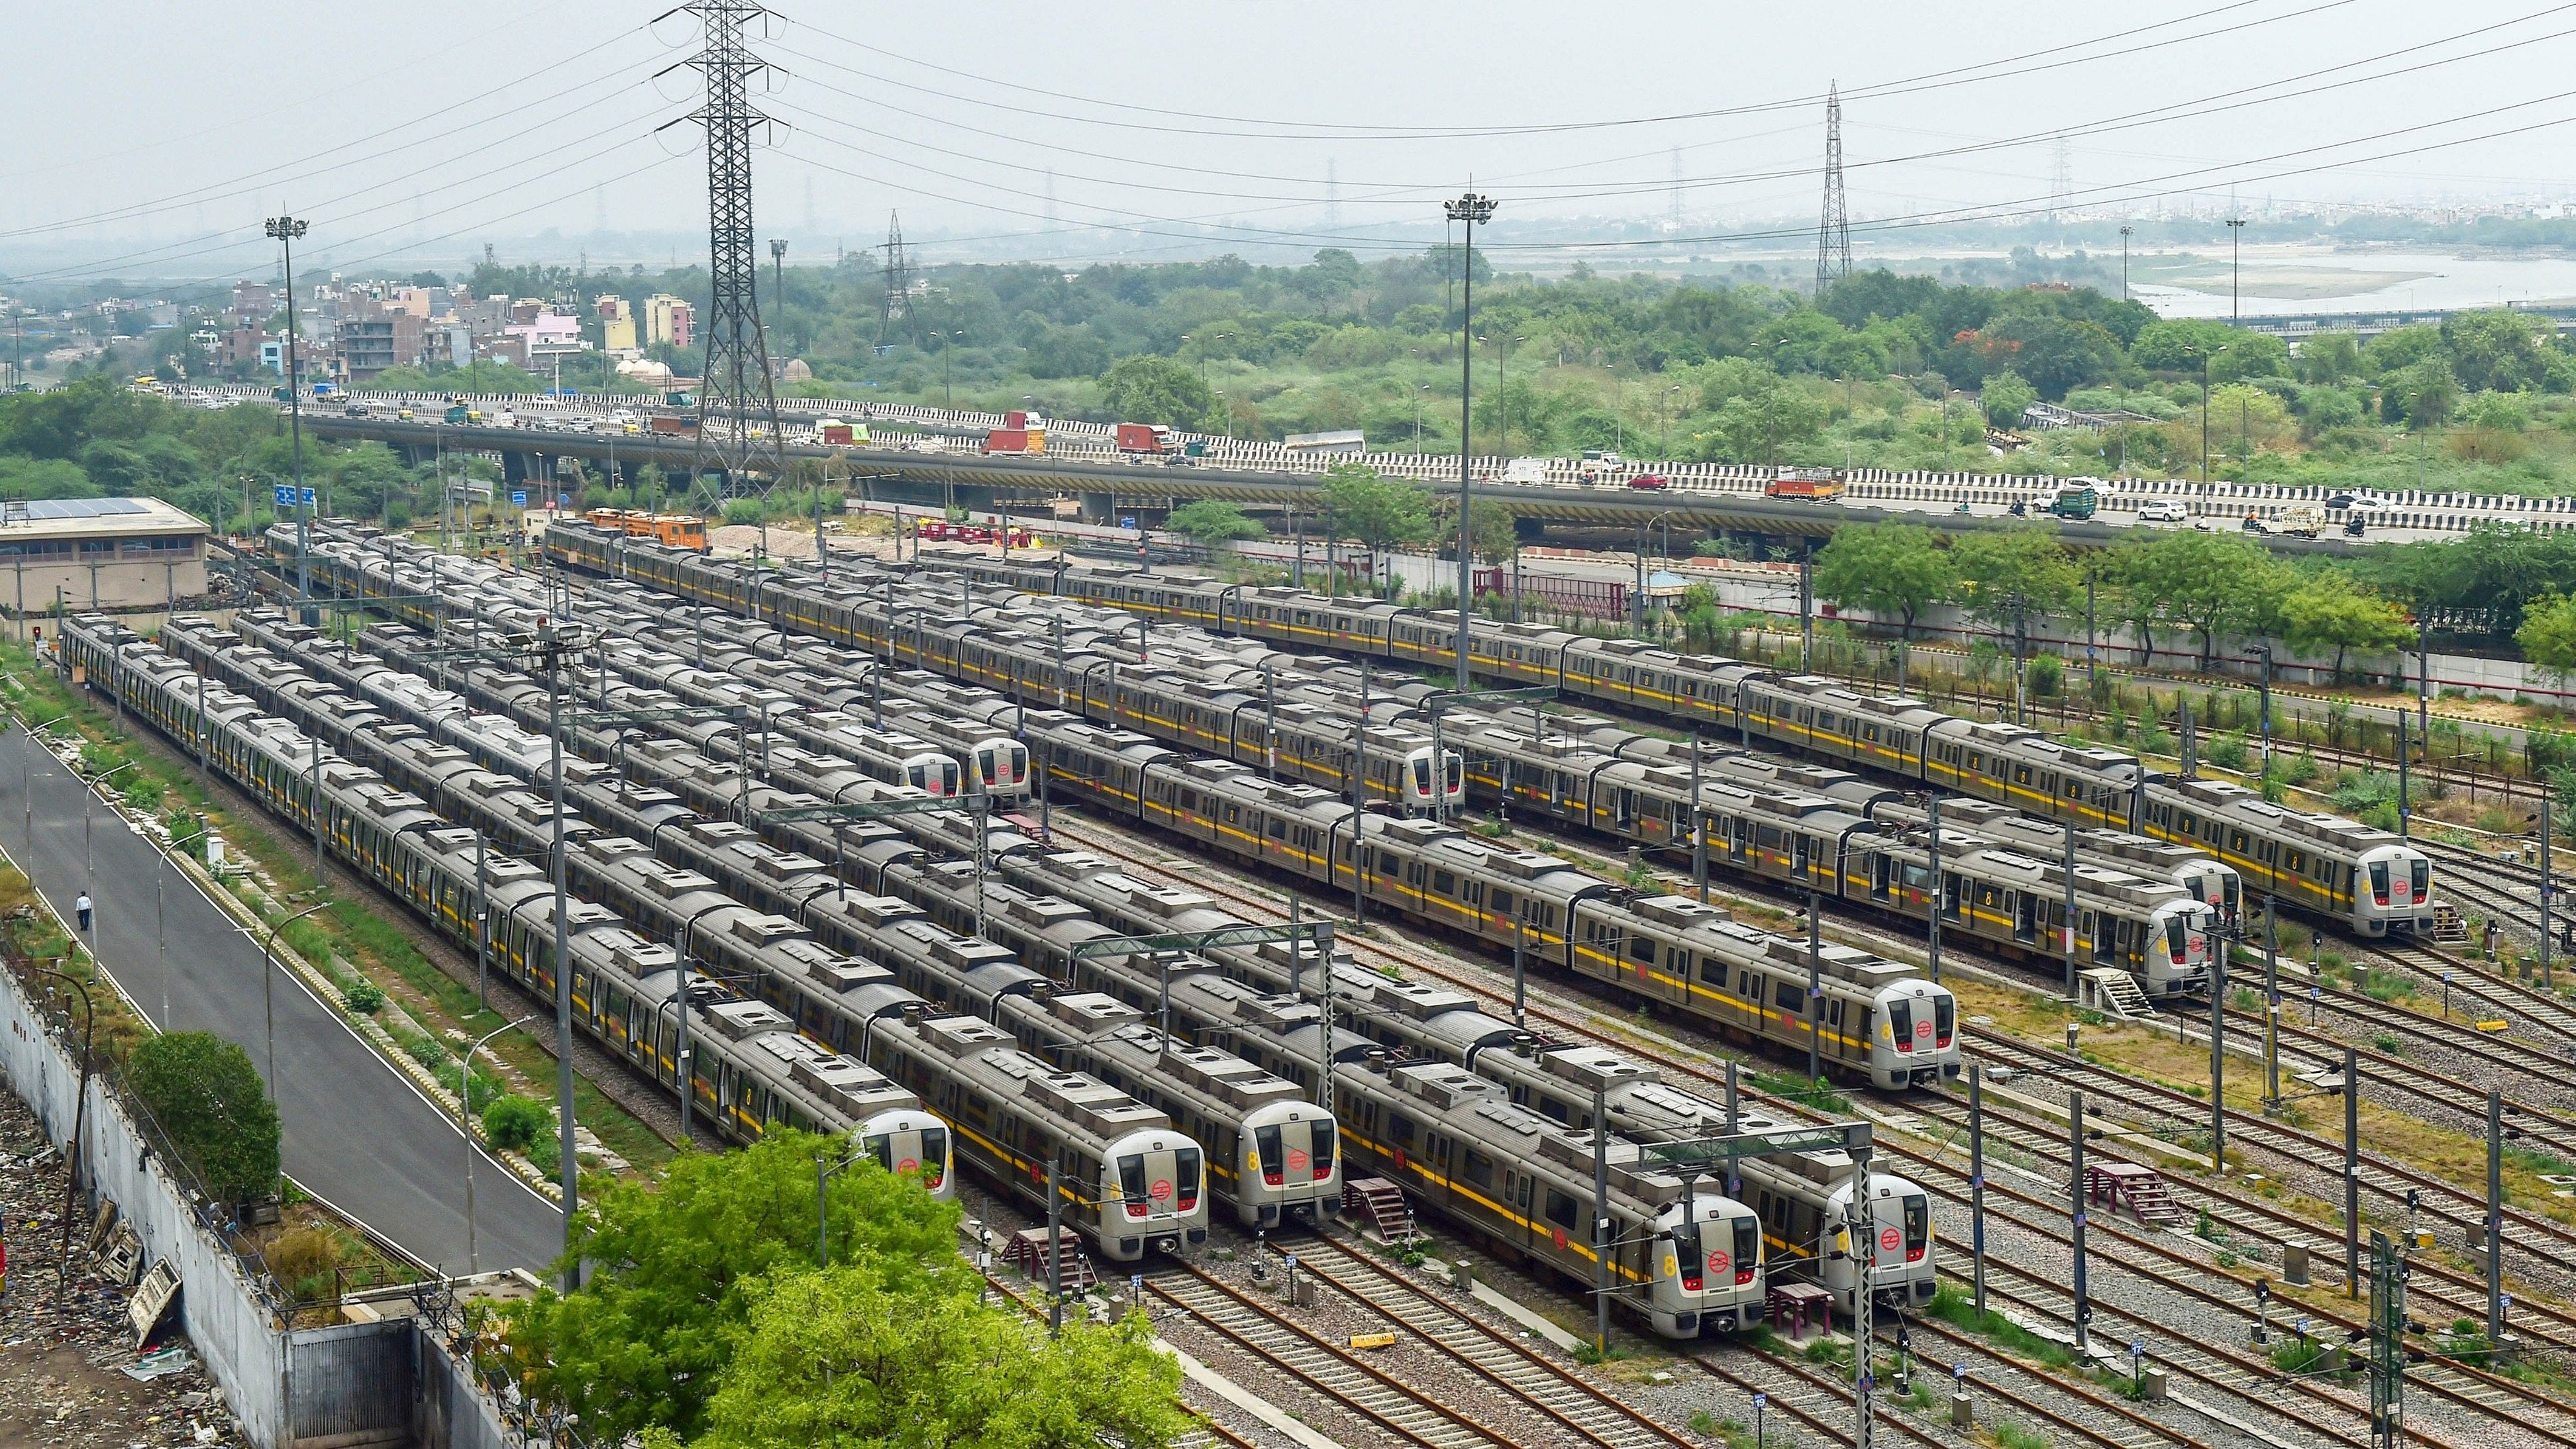 <div class="paragraphs"><p>Representative image of Delhi Metro trains.</p></div>